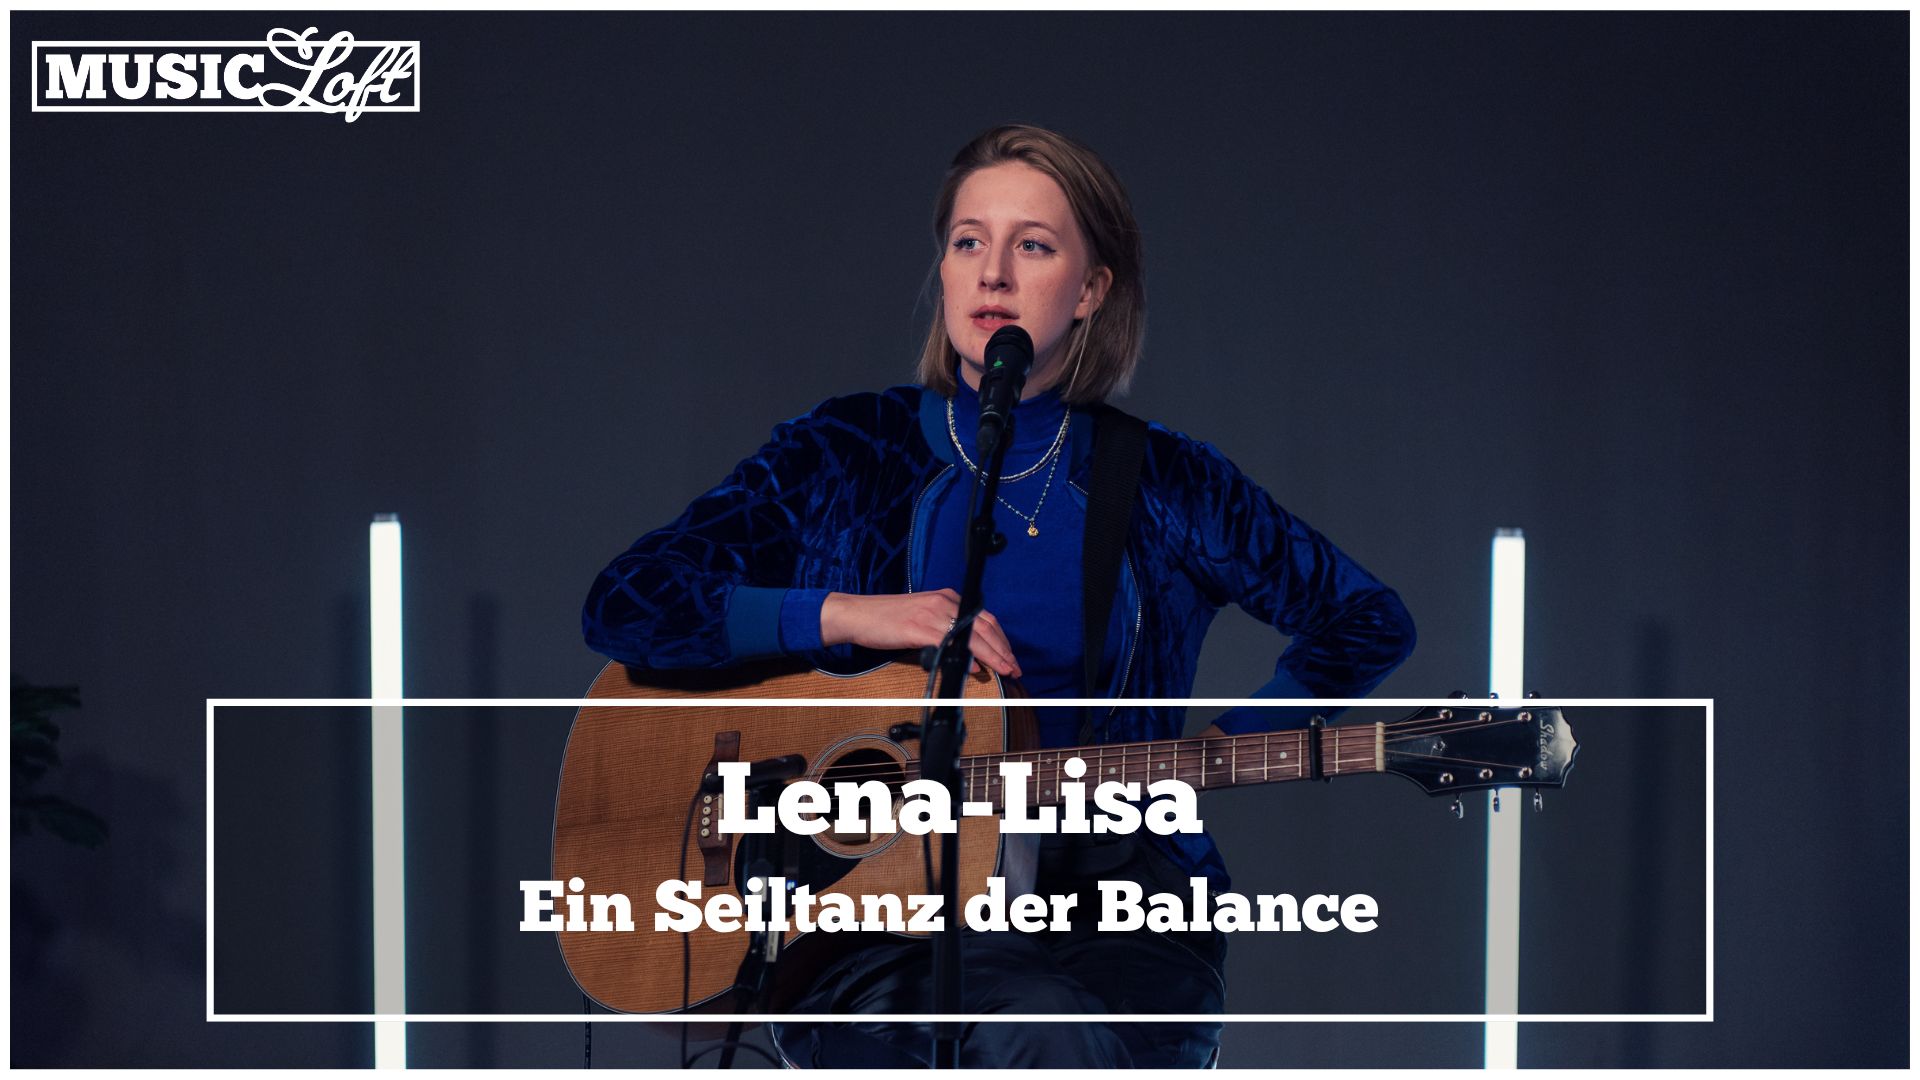 Lena-Lisa zu Gast in der MUSIC Loft